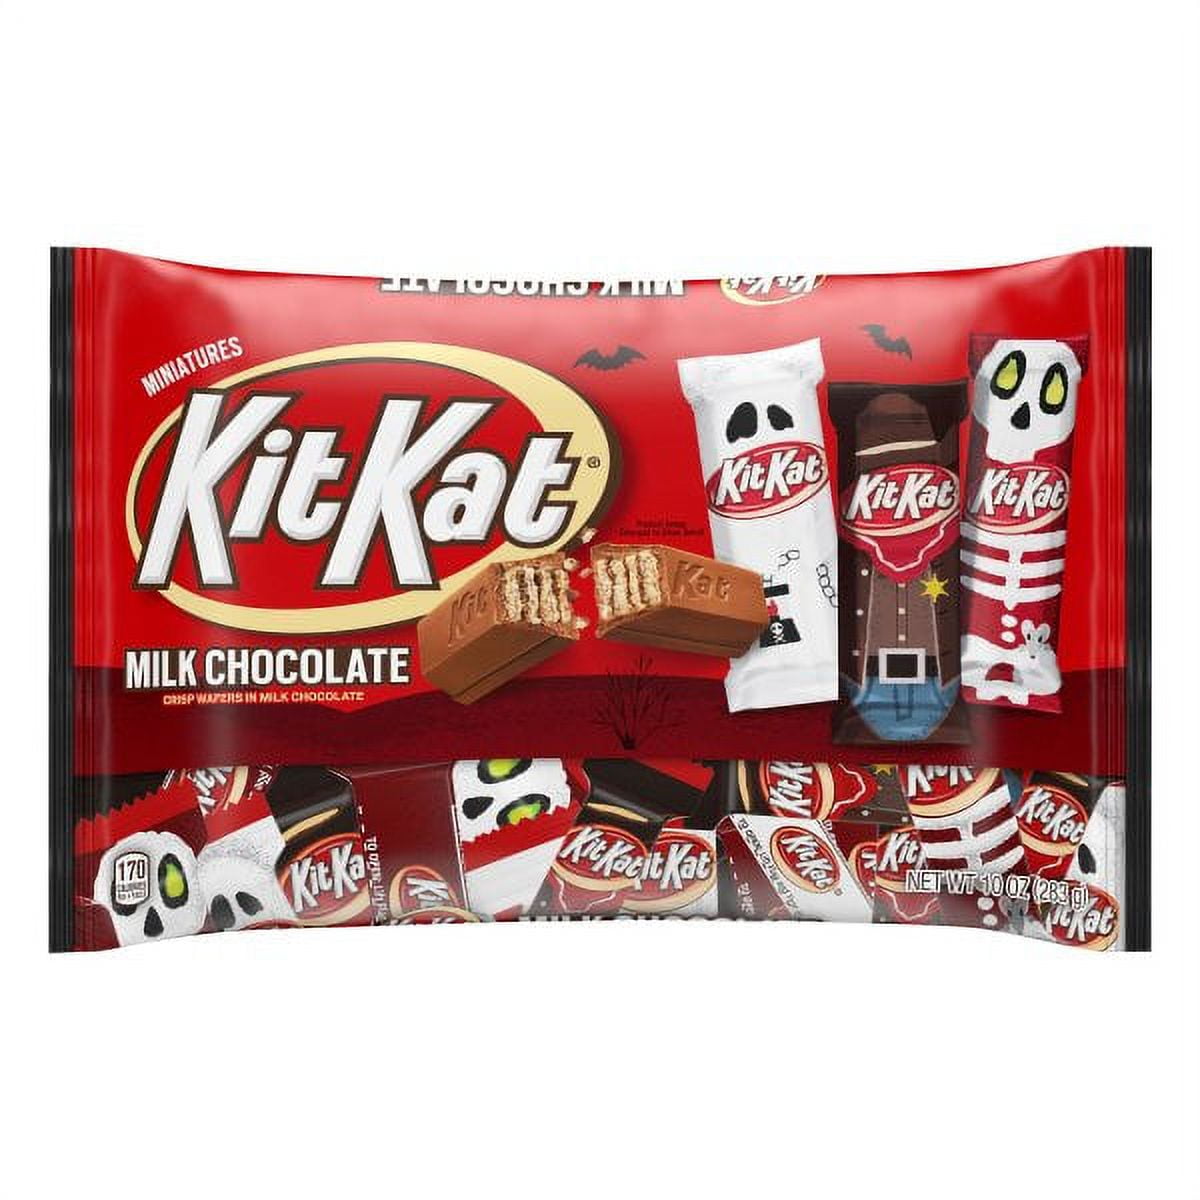 KIT KAT Miniatures Milk Chocolate Wafer Candy Bars, Halloween, 10